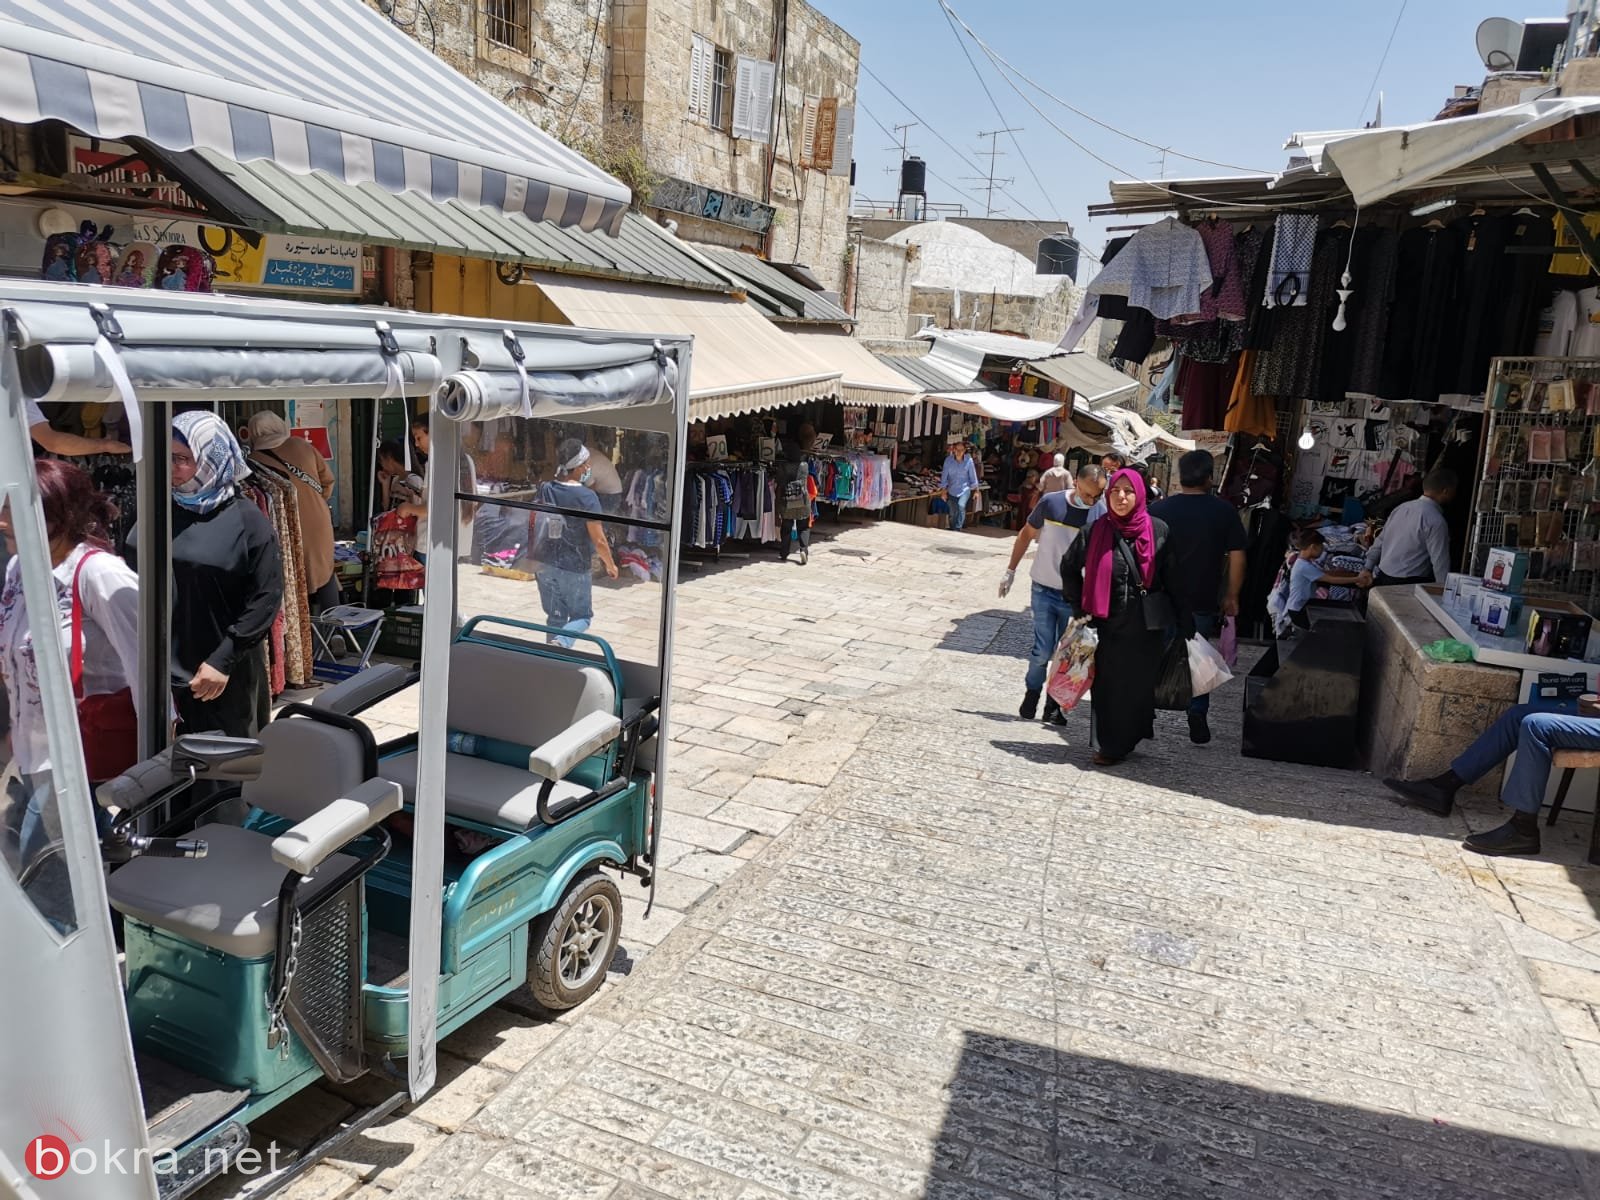   عشية العيد : أسواق القدس القديمة حزينة وخالية-13